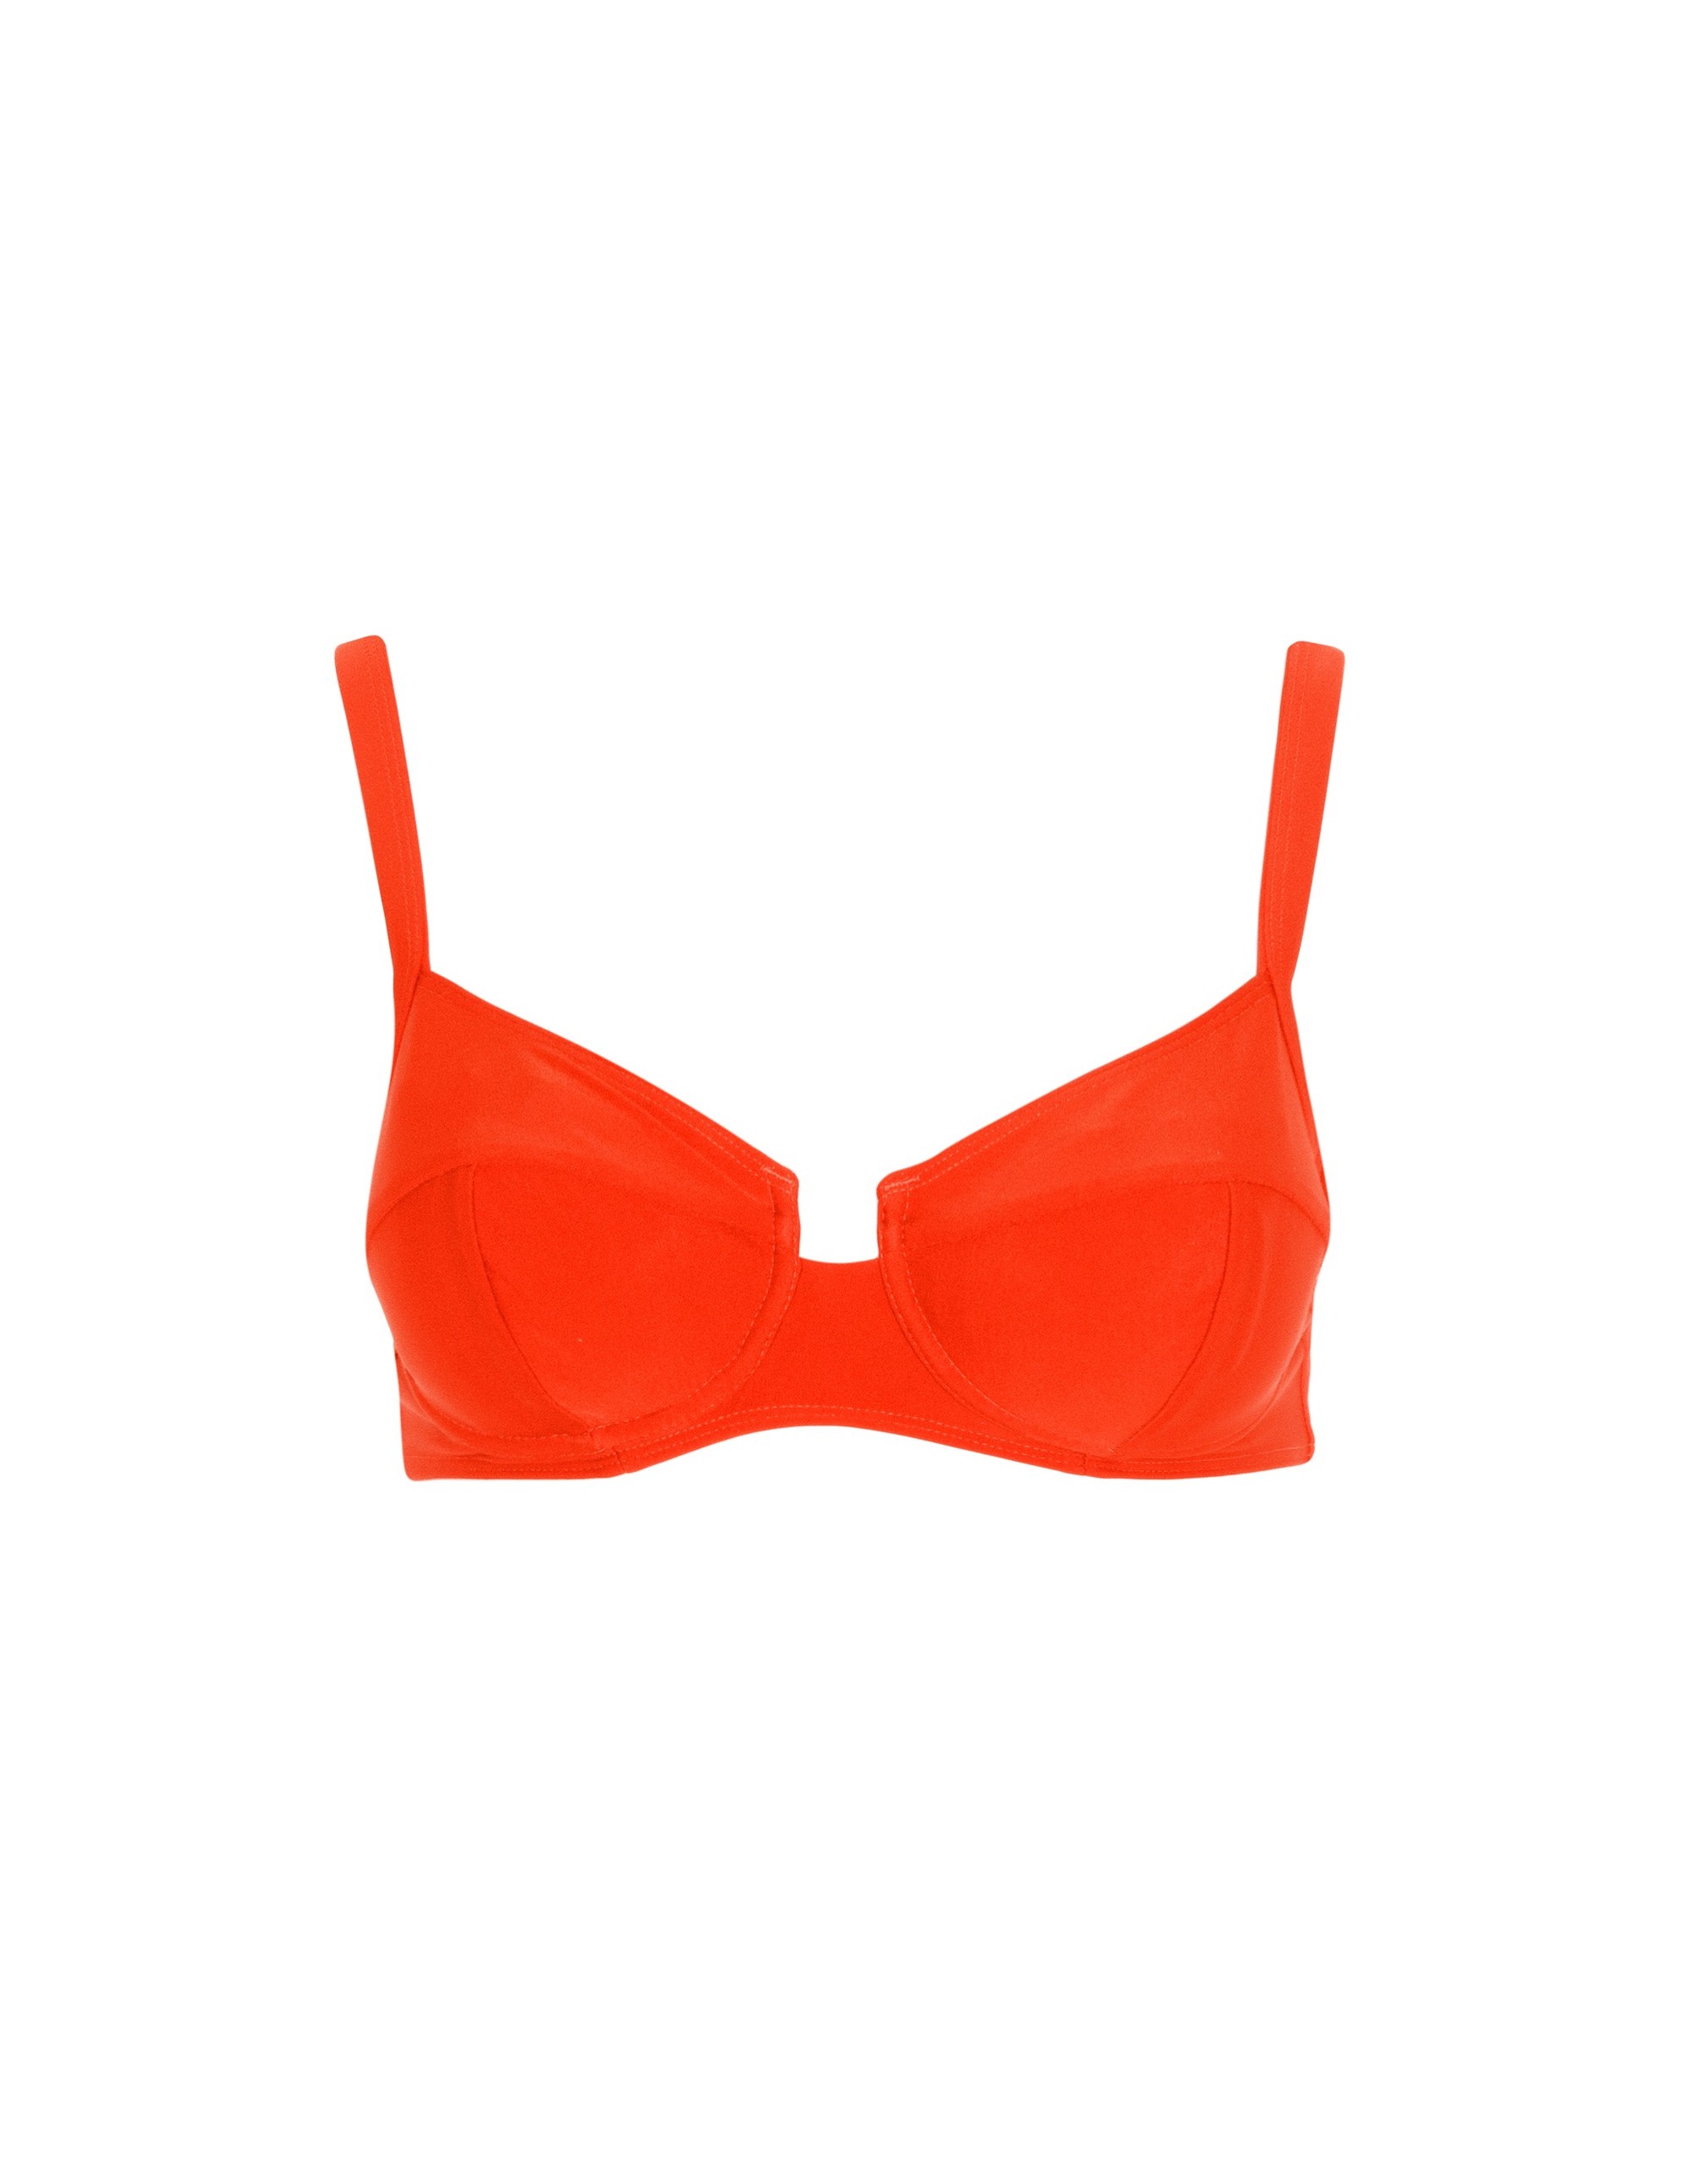 NAOS bikini top - CHARACTER RED